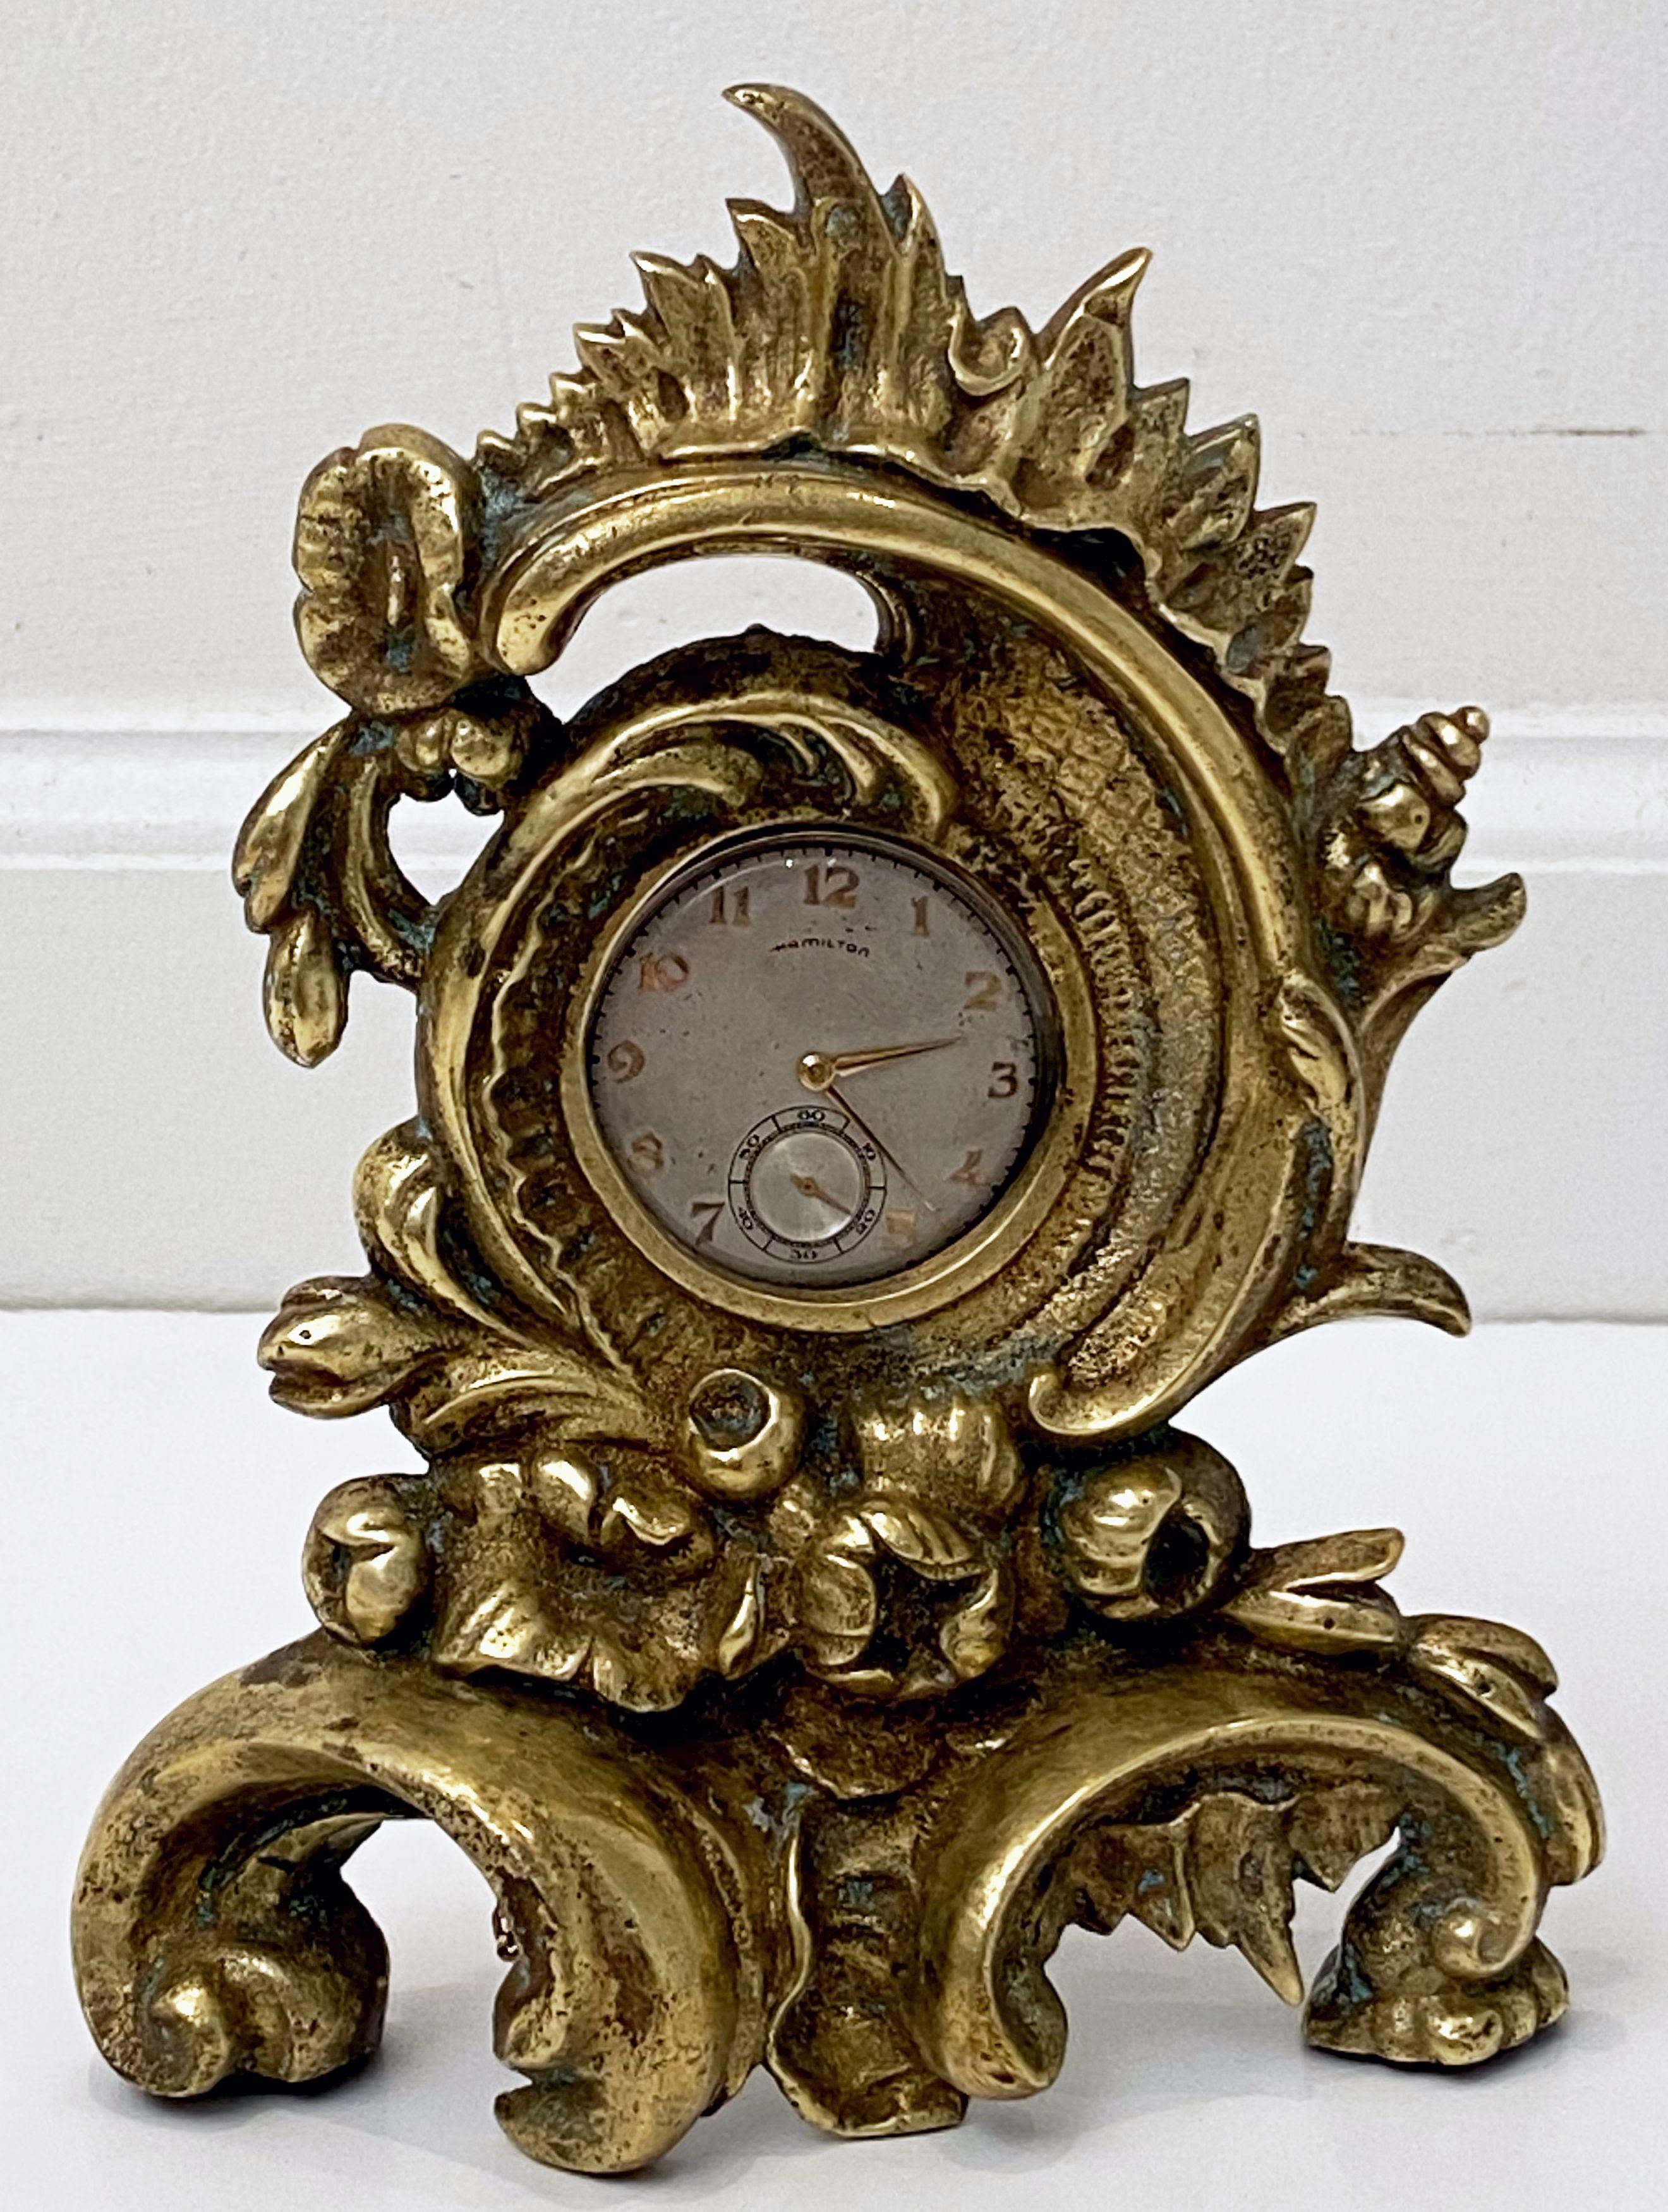 Ein feiner französischer Taschenuhrenhalter oder -ständer aus vergoldeter Bronze aus dem späten 19. Jh. mit einem stilvollen Rokoko- oder Barockdesign.

Hinweis: umfasst nicht die Taschenuhr auf dem Foto.